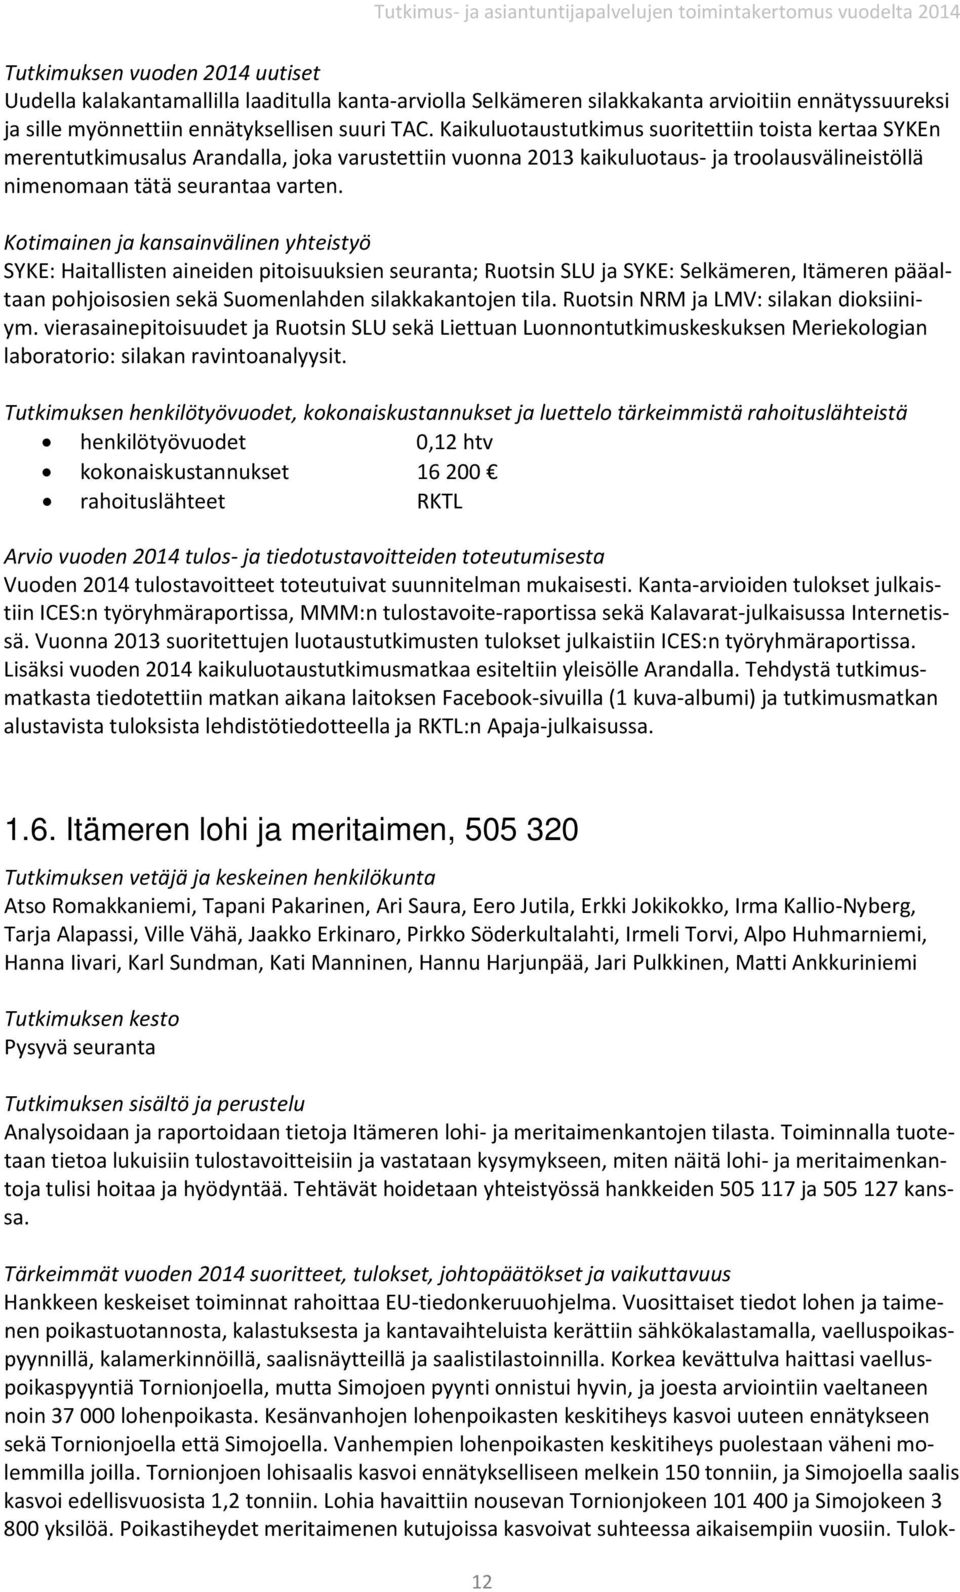 SYKE: Haitallisten aineiden pitoisuuksien seuranta; Ruotsin SLU ja SYKE: Selkämeren, Itämeren pääaltaan pohjoisosien sekä Suomenlahden silakkakantojen tila. Ruotsin NRM ja LMV: silakan dioksiiniym.